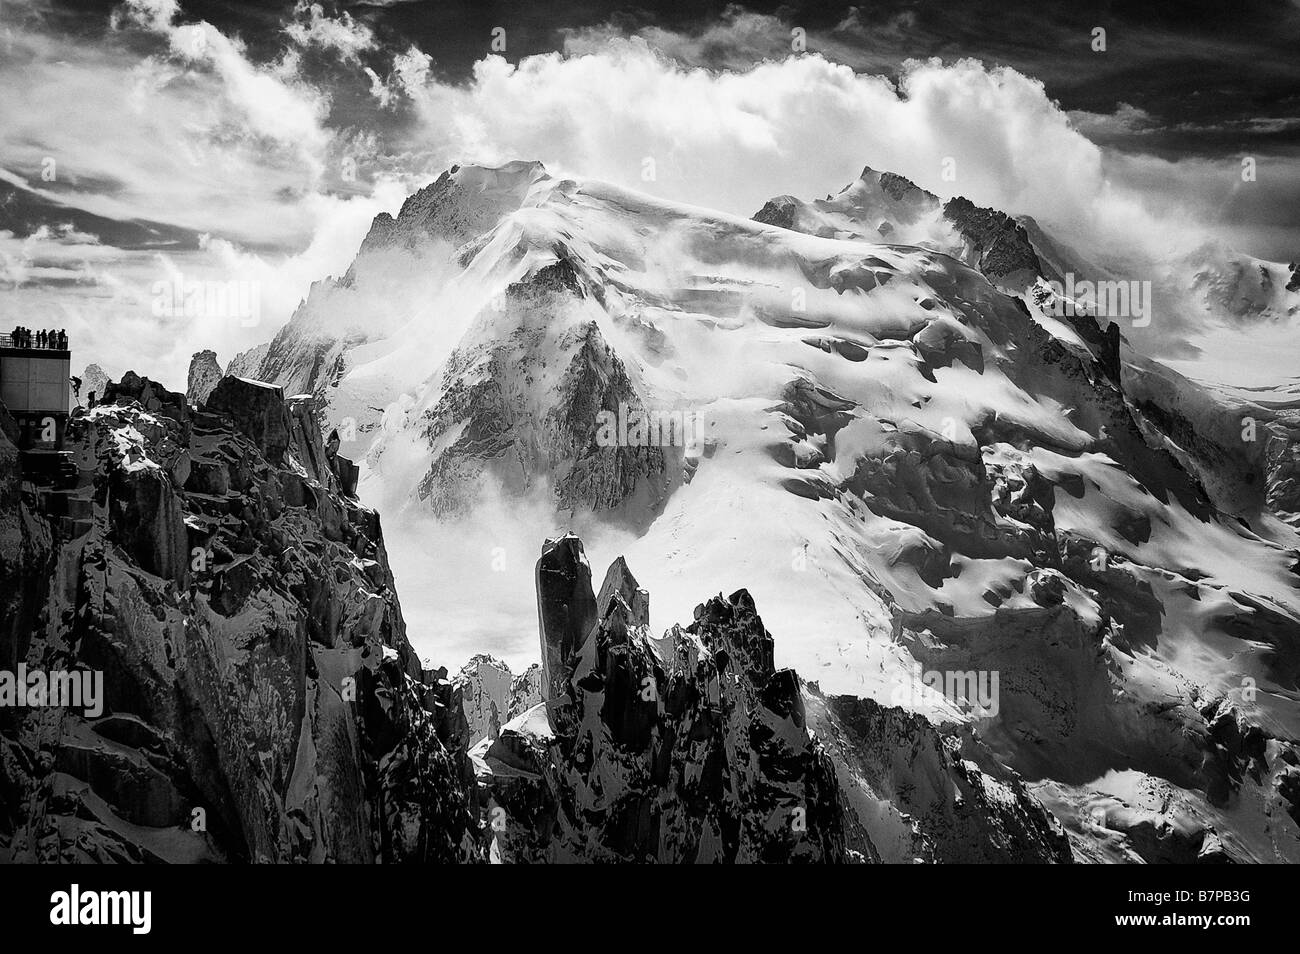 Mont-Blanc du Tacul, Arete des Cosmiques and the observation platform of the Aiguille du Midi cablecar, Chamonix, France. Stock Photo